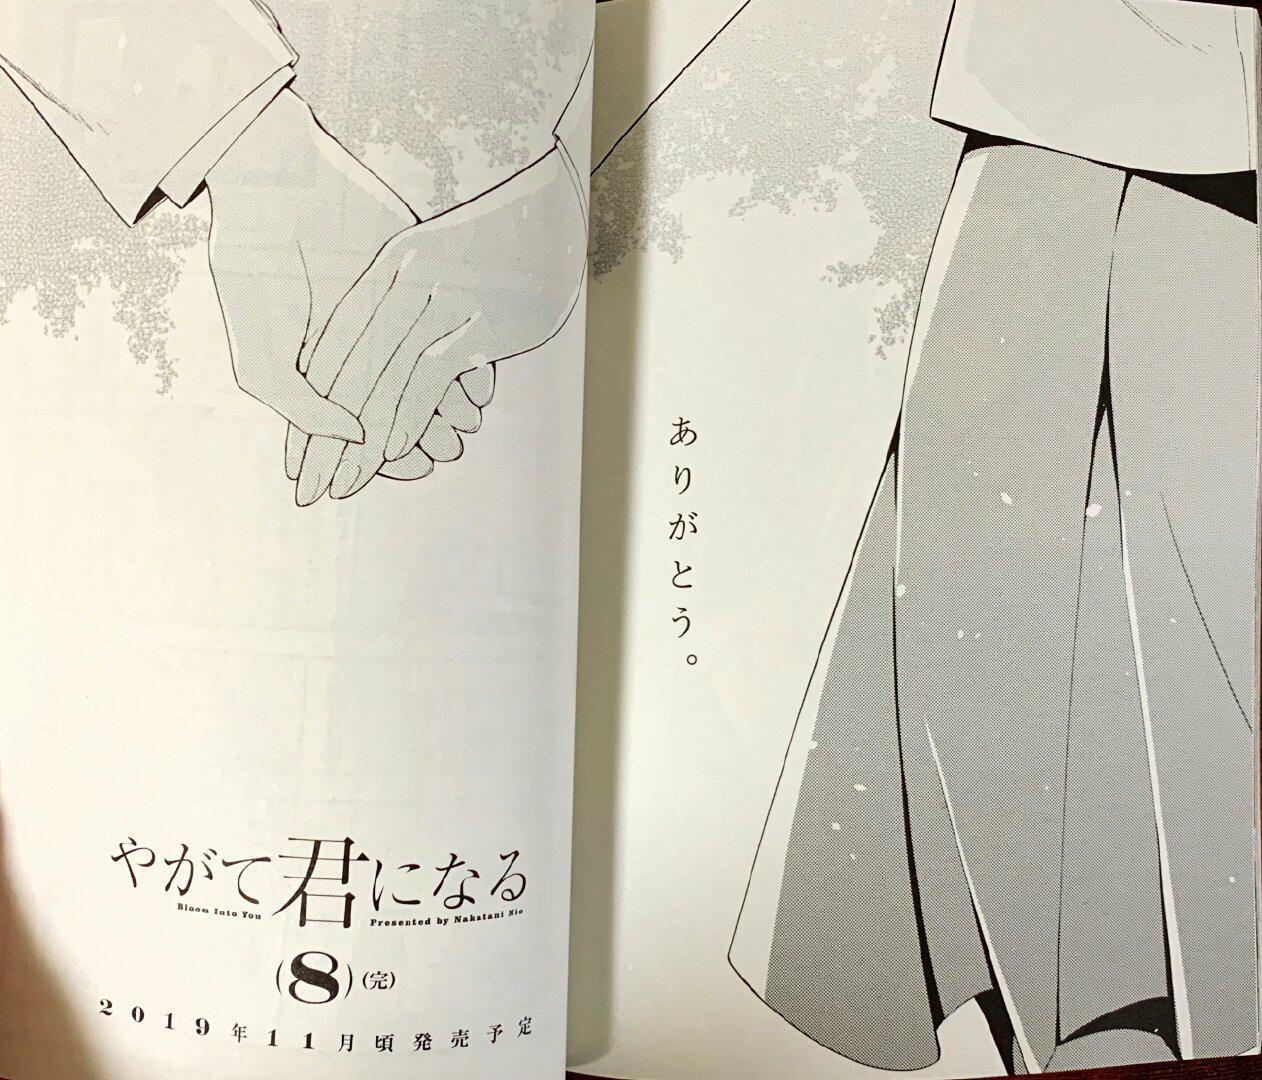 Nio Nakataniâs âBloom into Youâ manga series will end with the 8th volume; on sale November 2019.